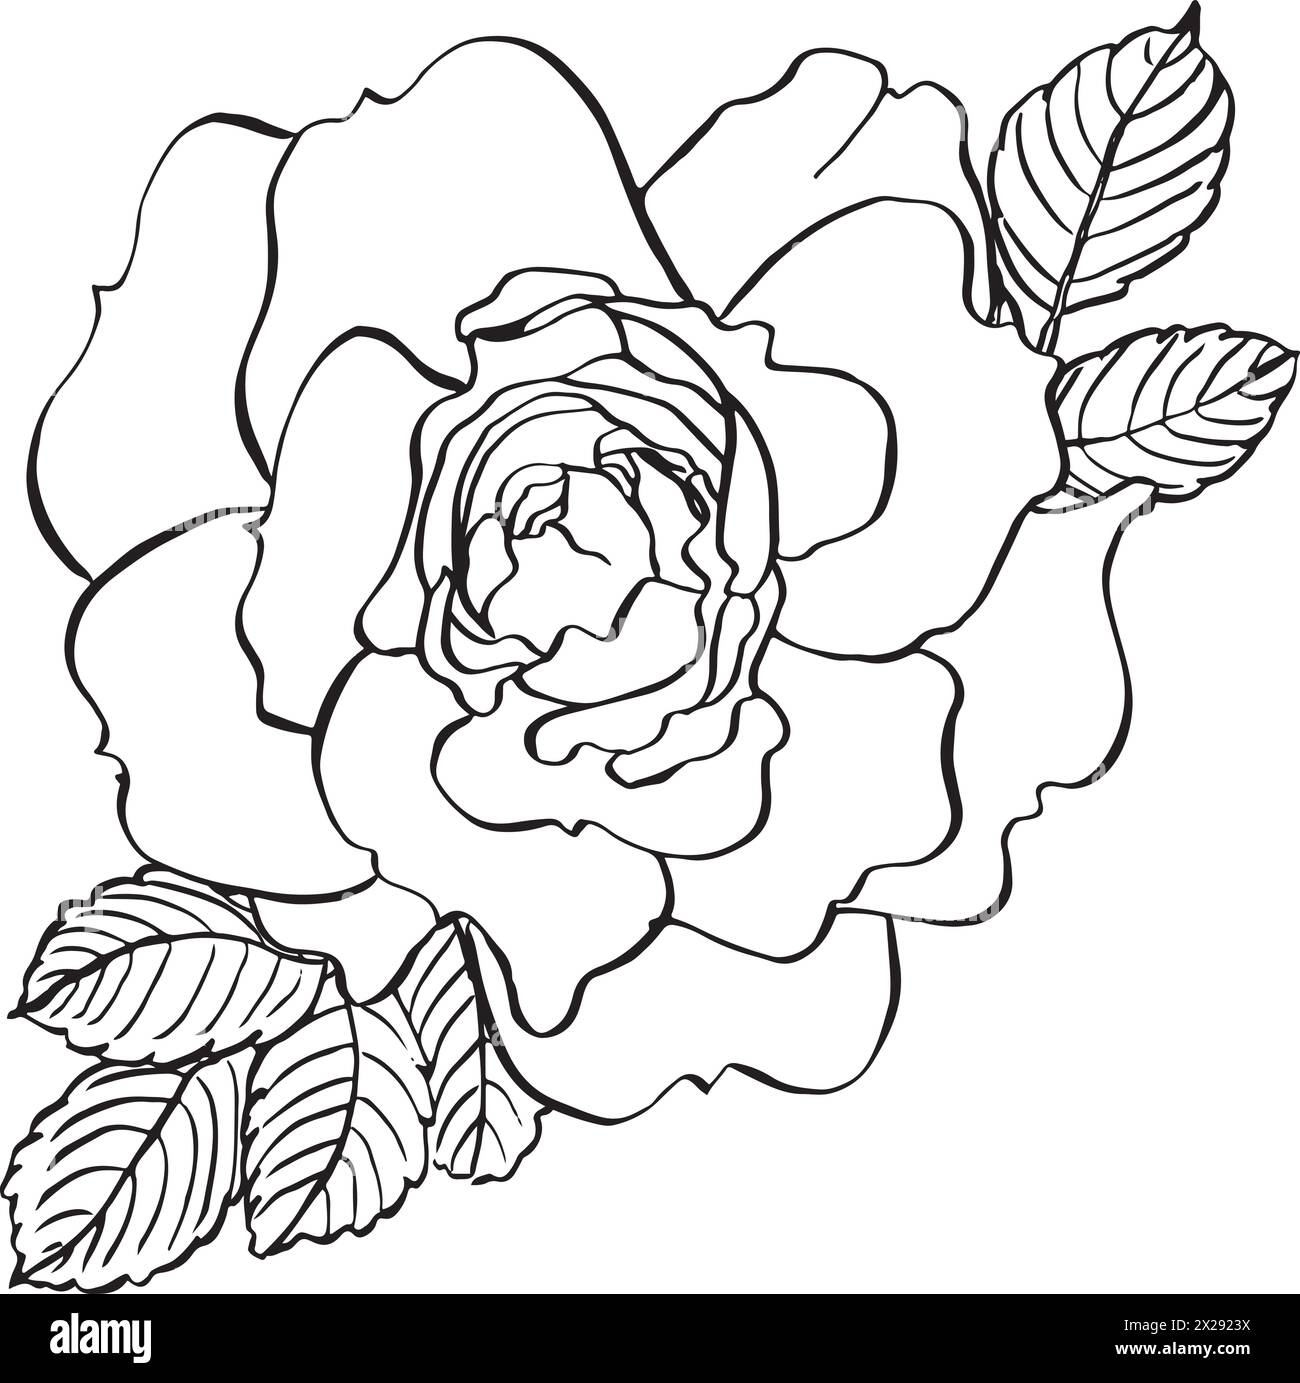 Wilde Rosenblume mit Blättern. Vektor Hand gezeichnete florale Illustration der blühenden Rose Hüfte in Linie Art Stil. Skizzieren Sie in Schwarz-weiß-Farben auf Isolat Stock Vektor